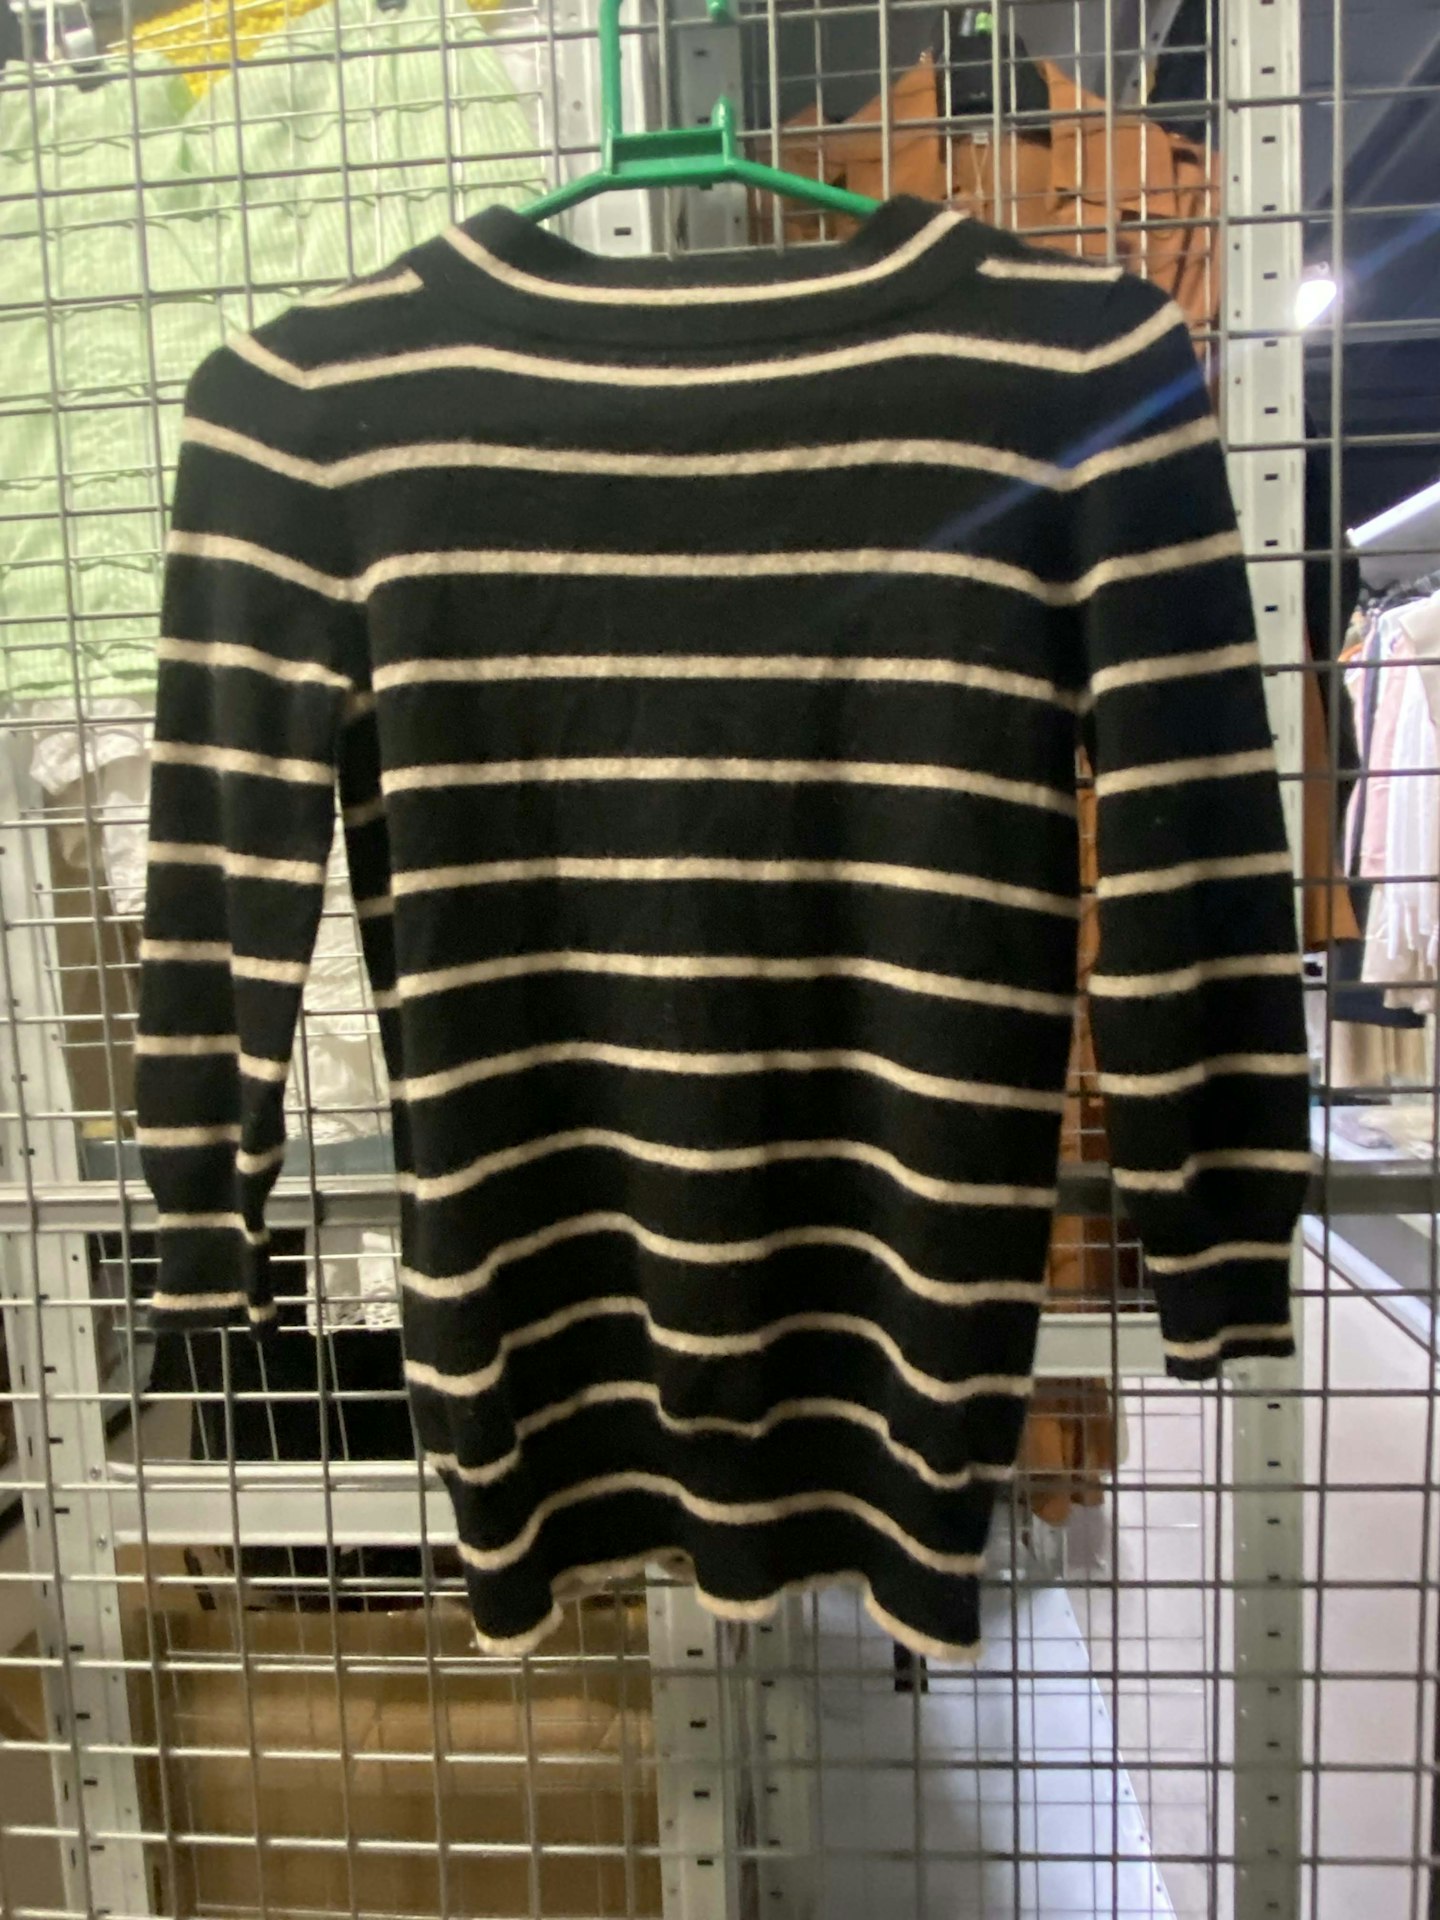 A striped jumper chosen by Chloë Sevigny